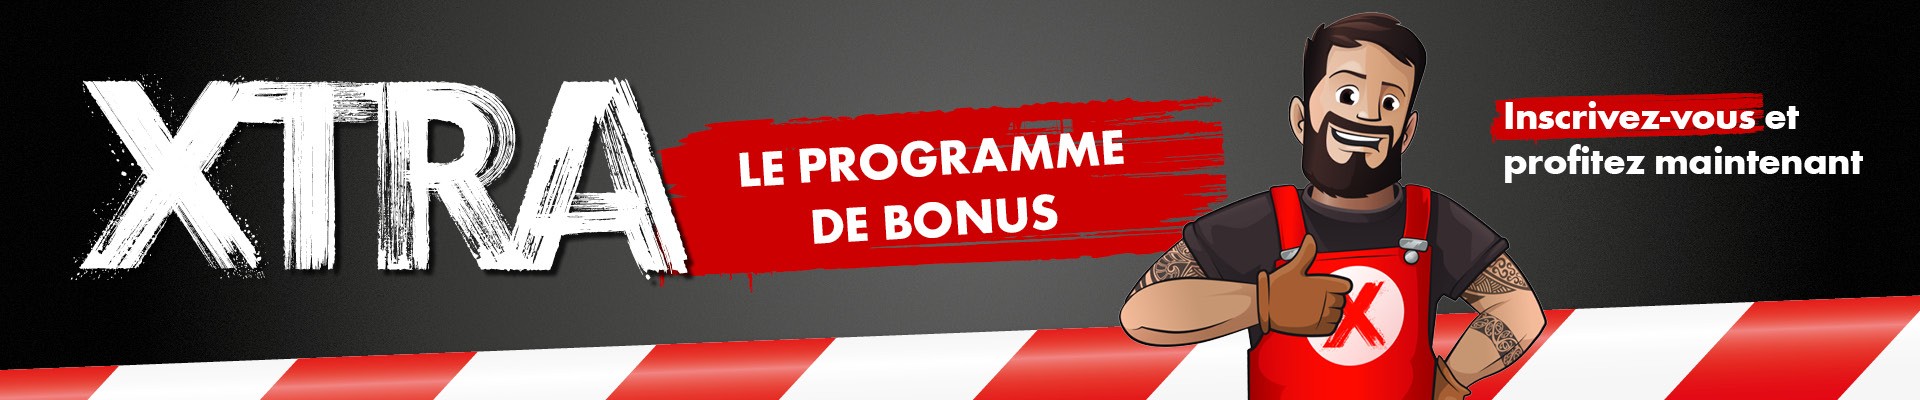 Programme de bonus Würth XTRA